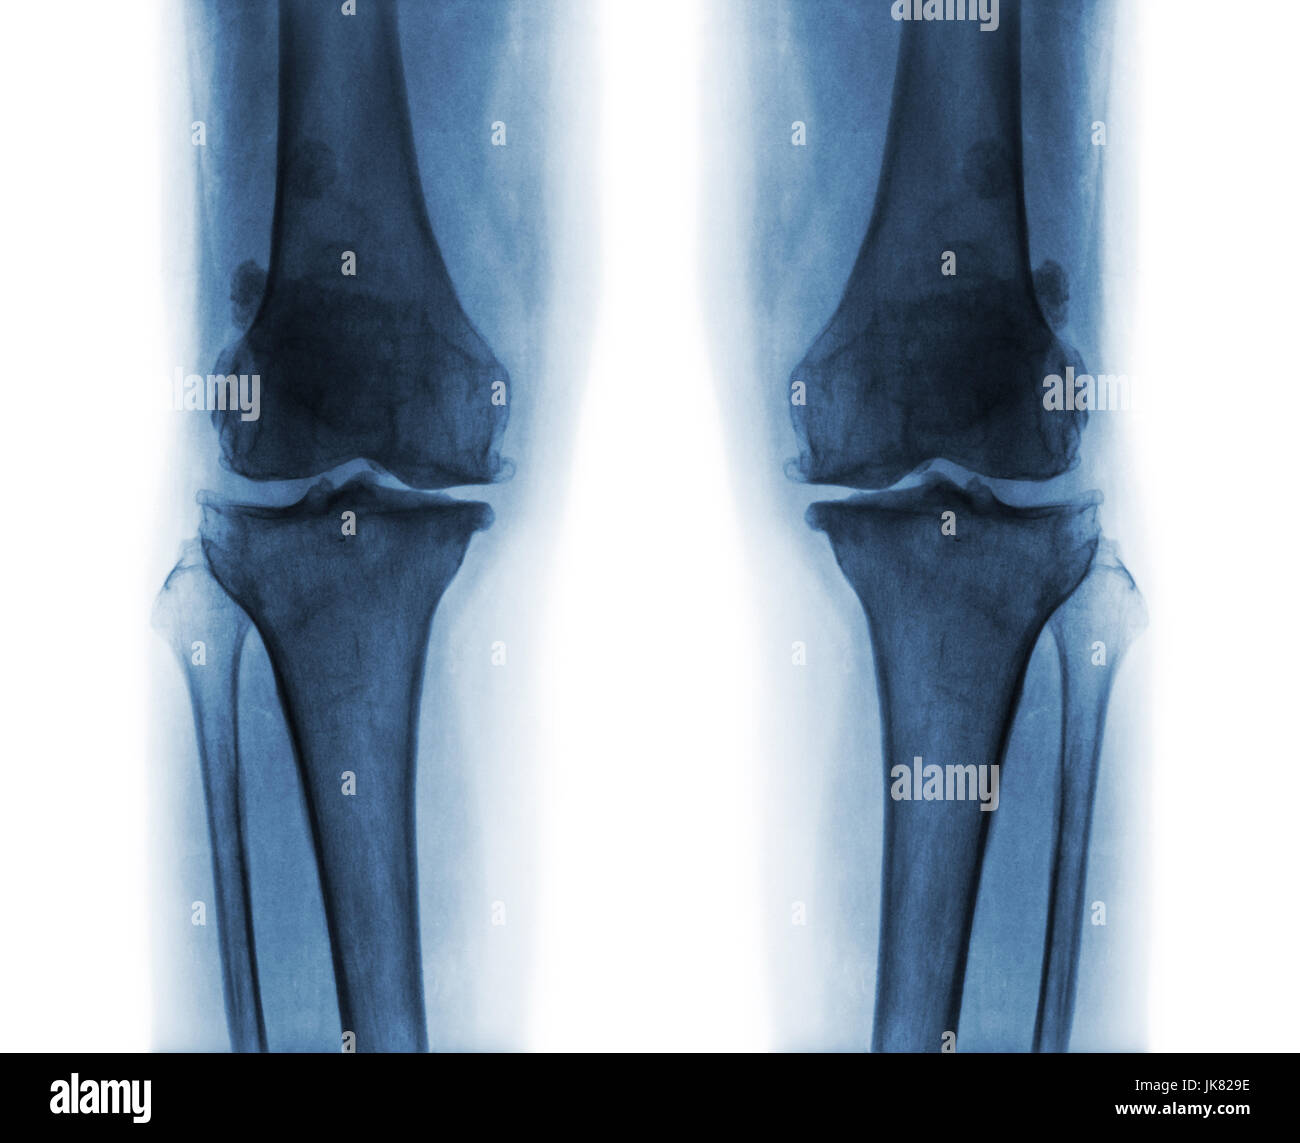 Arthrose, die beide Knie.  Film x-ray AP (anterior - posterior) Knie Show schmale Gelenkspalt. Osteophyten (Spur). Subcondral Sklerose. Stockfoto